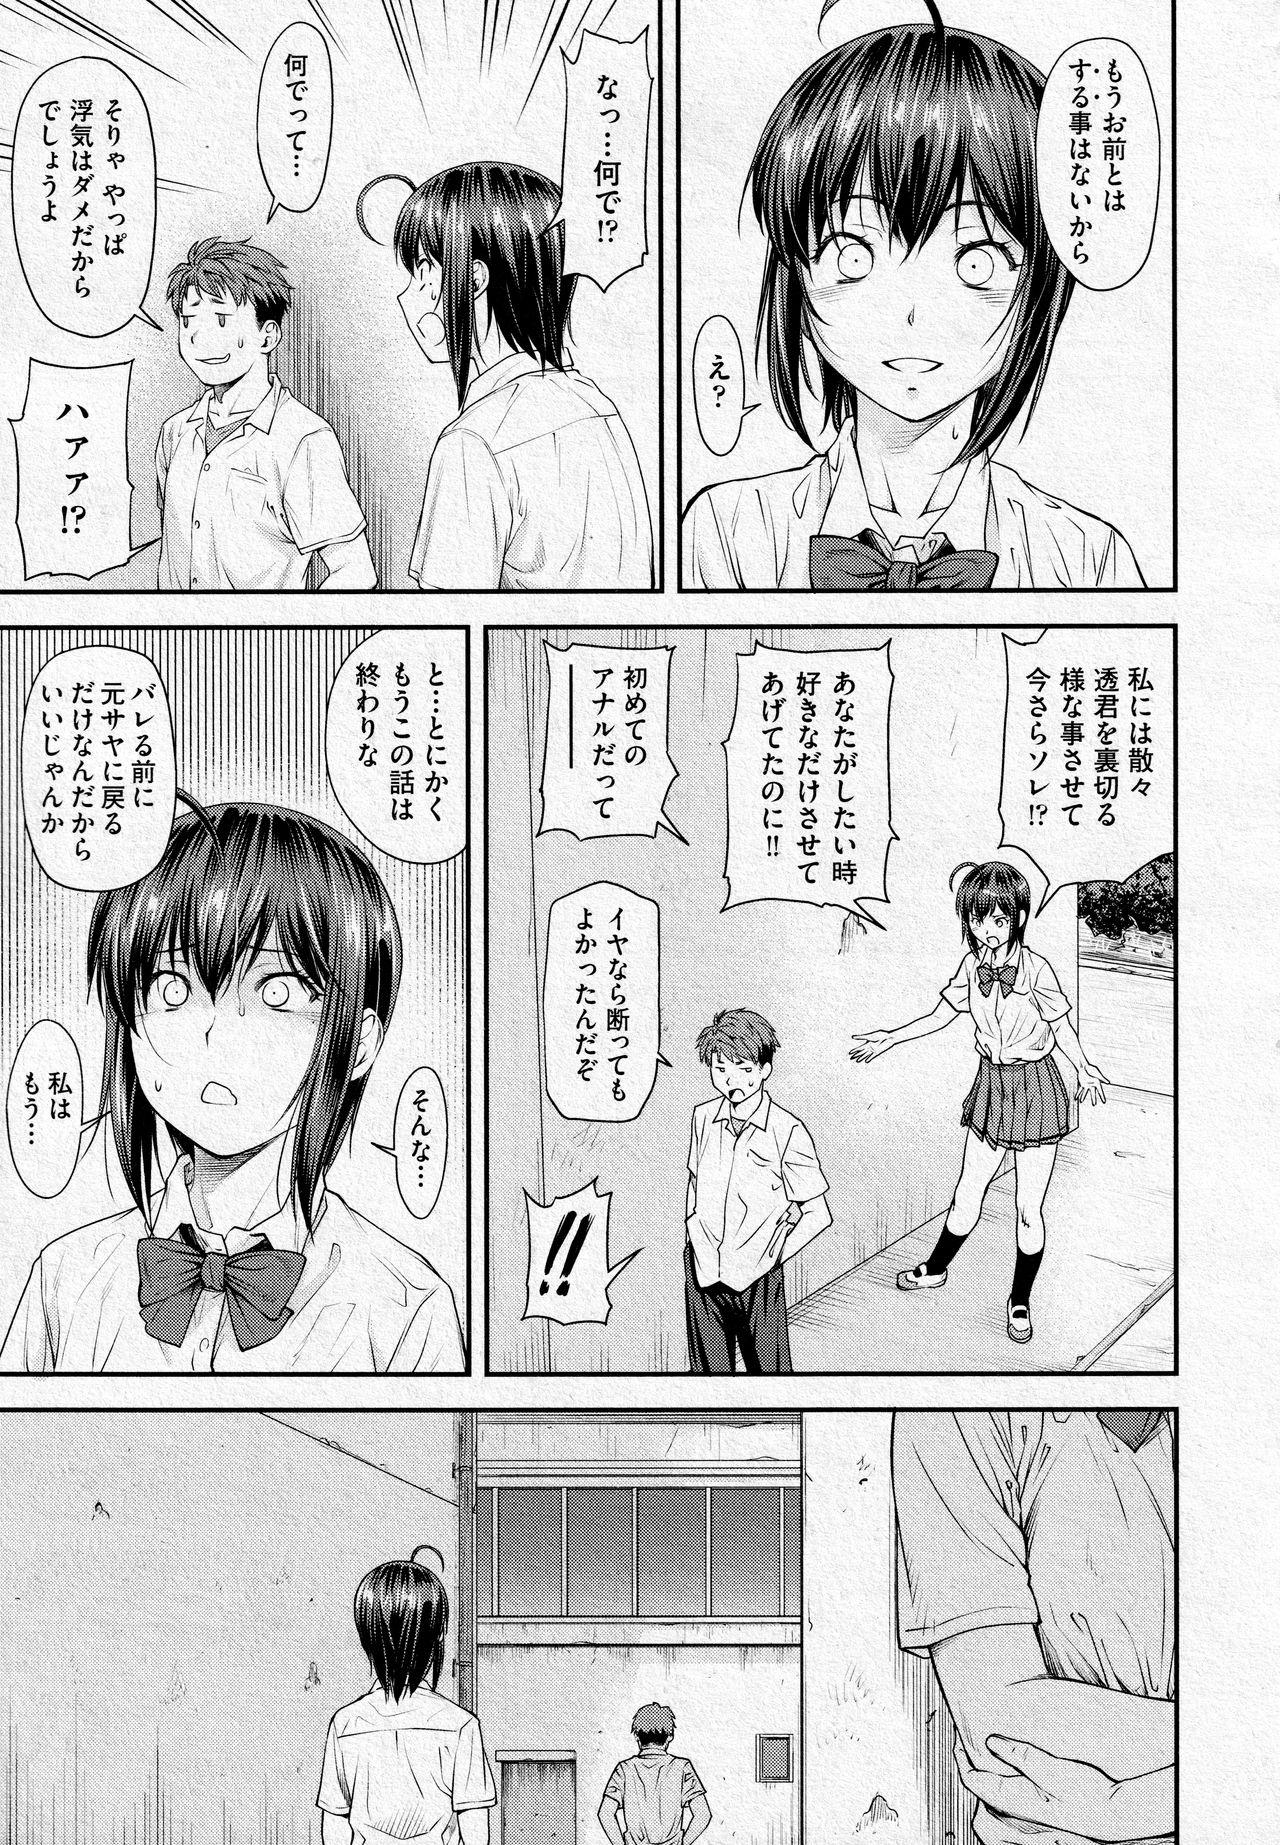 Hard Kaname Date #13 Banheiro - Page 5